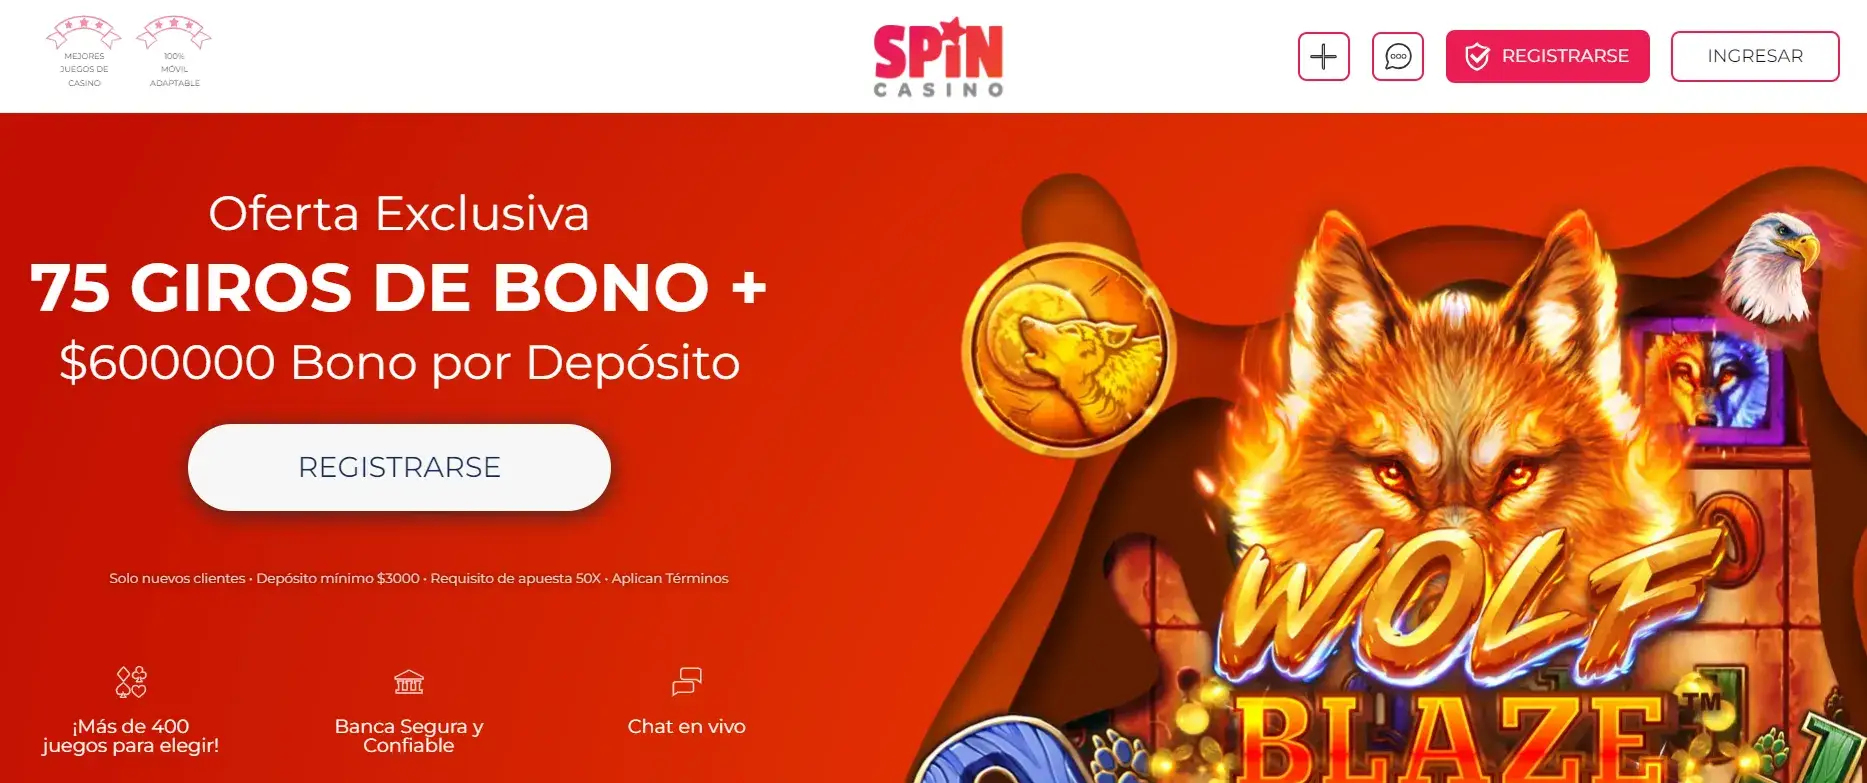 calificaciones casinos online spincasino